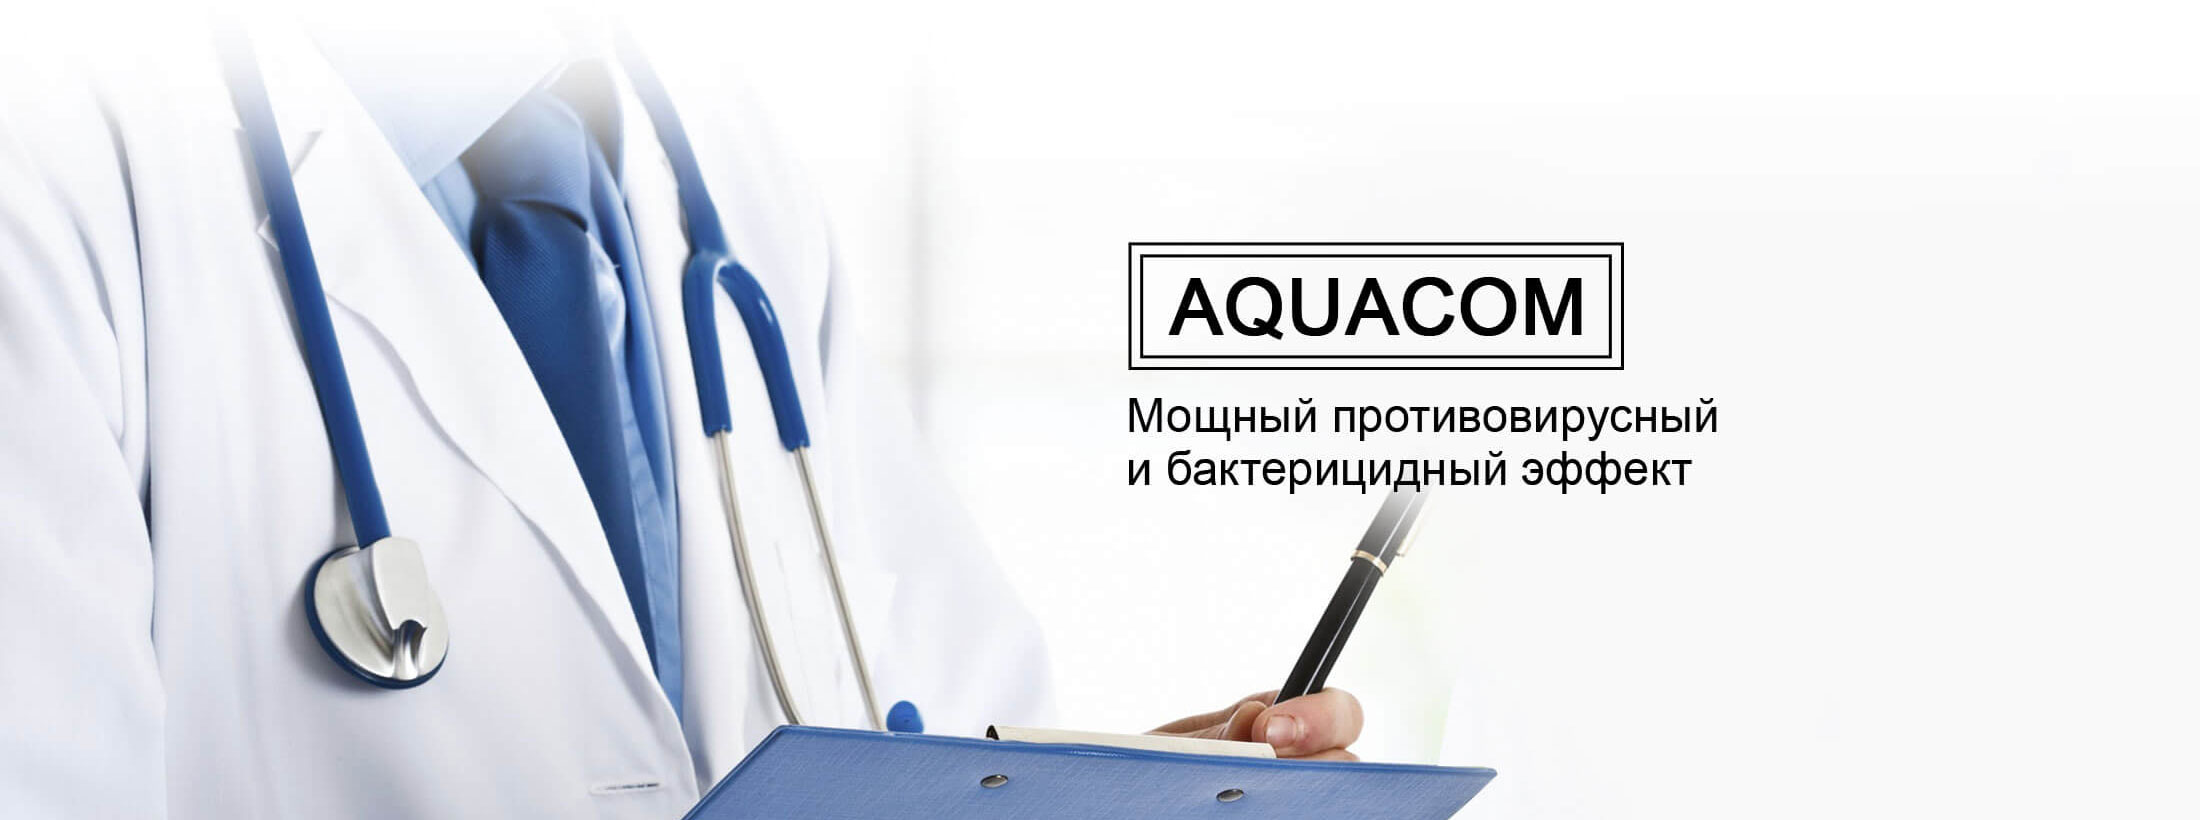 Aquacom увб м02 инструкция скачать